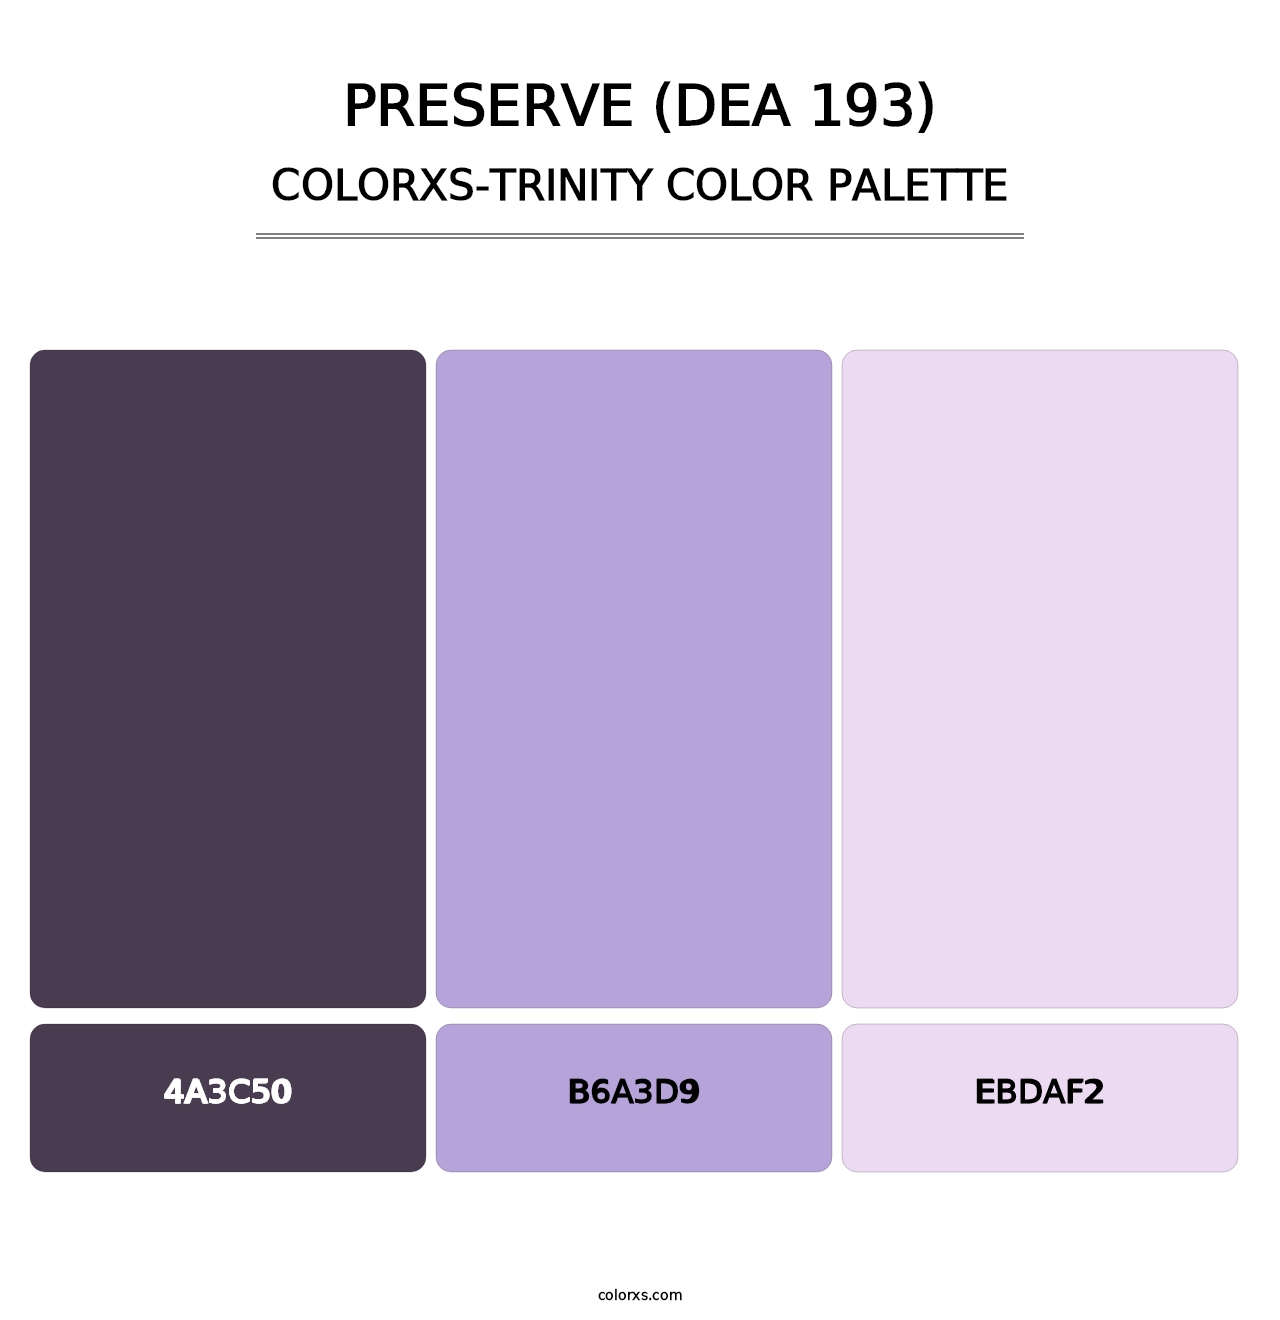 Preserve (DEA 193) - Colorxs Trinity Palette